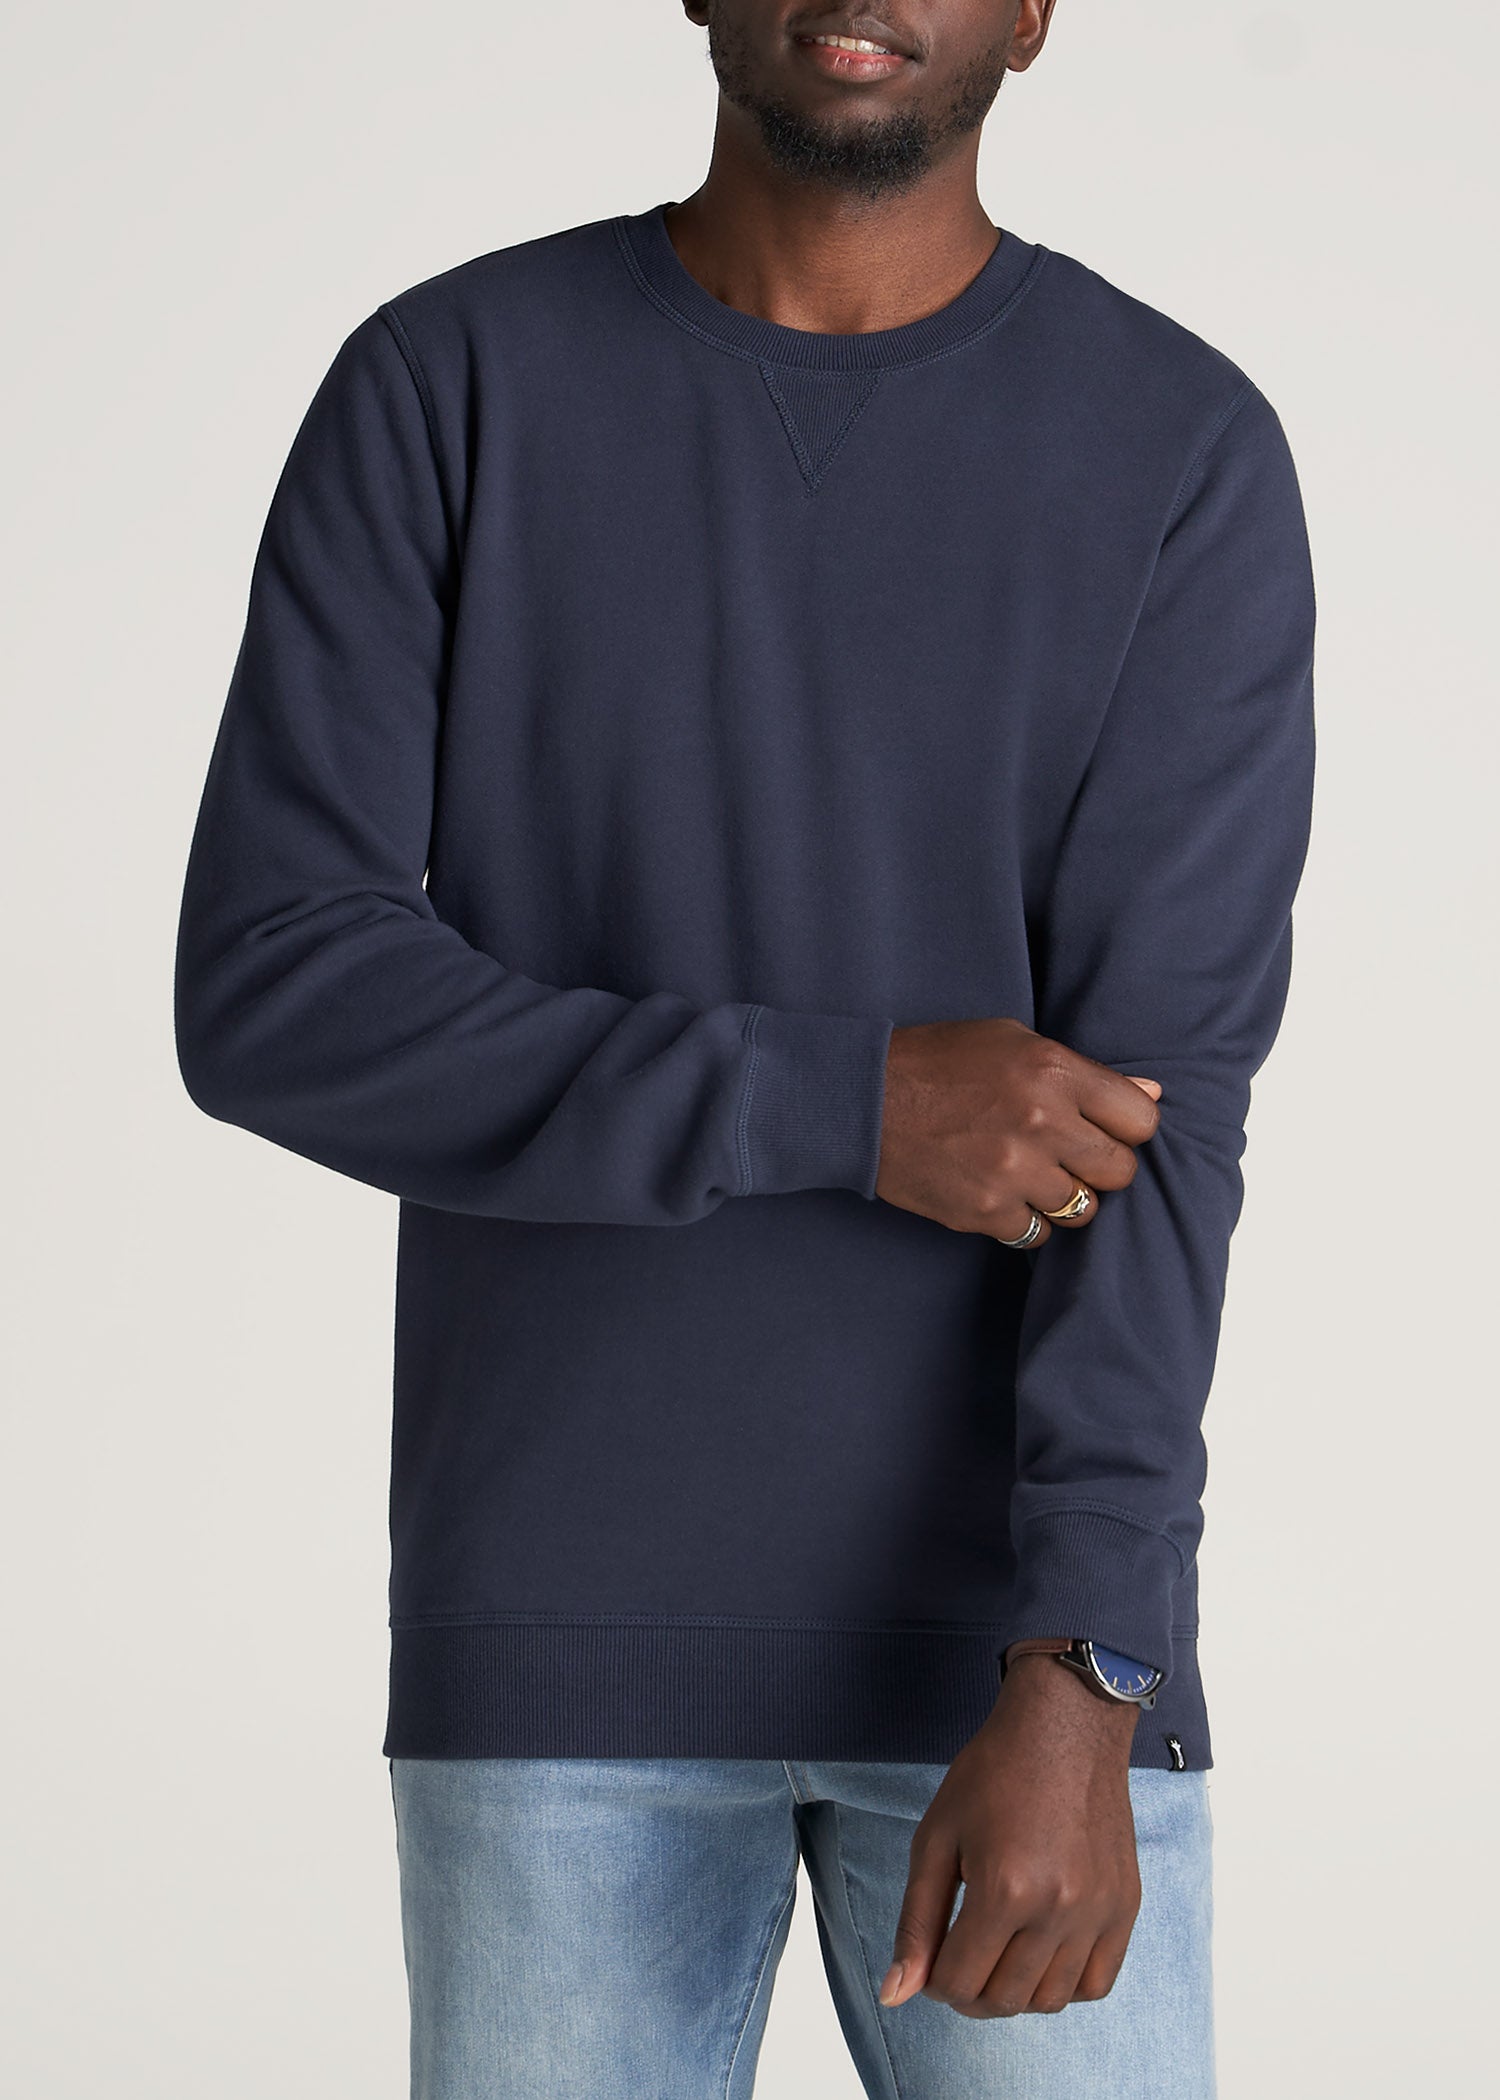 Men's Cloud & Crane Graphic Sweatshirt, Casual Crew Neck Long